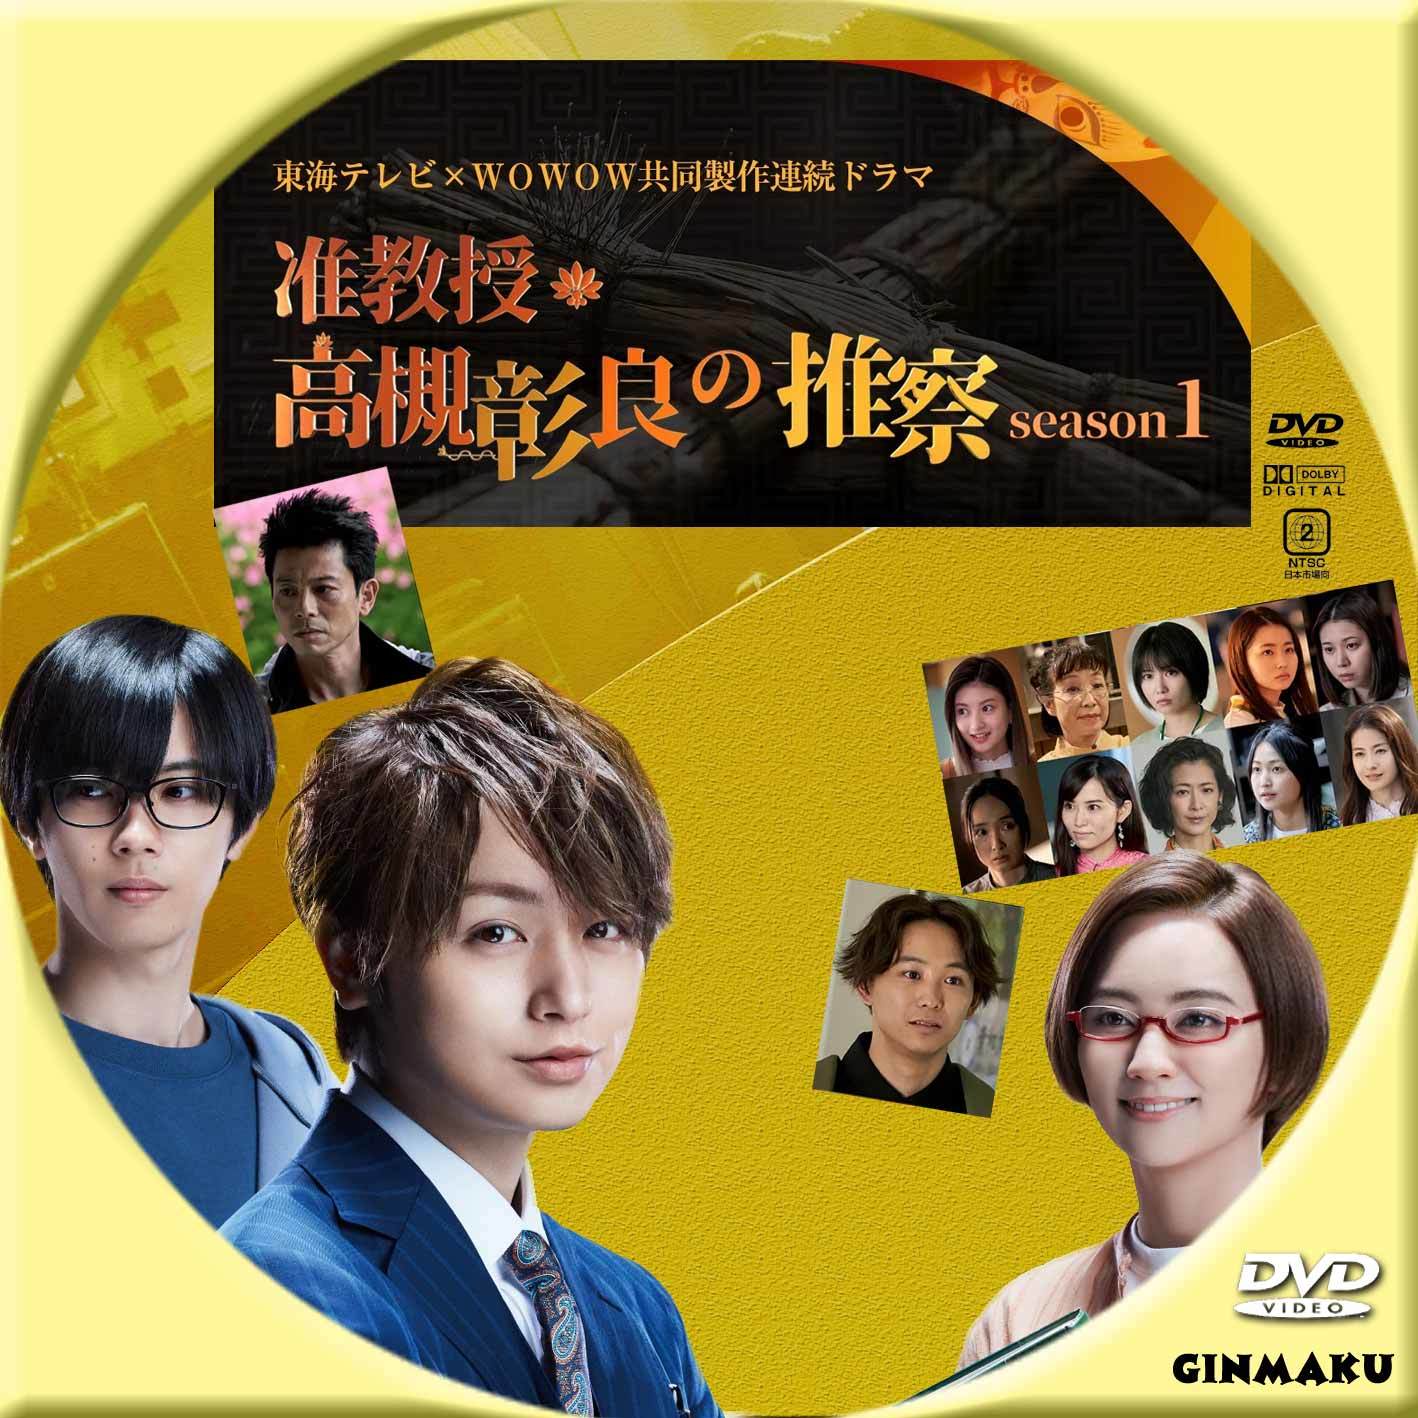 准教授 高槻彰良の推察 season1 | GINMAKU Custom DVD＆Blu-ray labels 